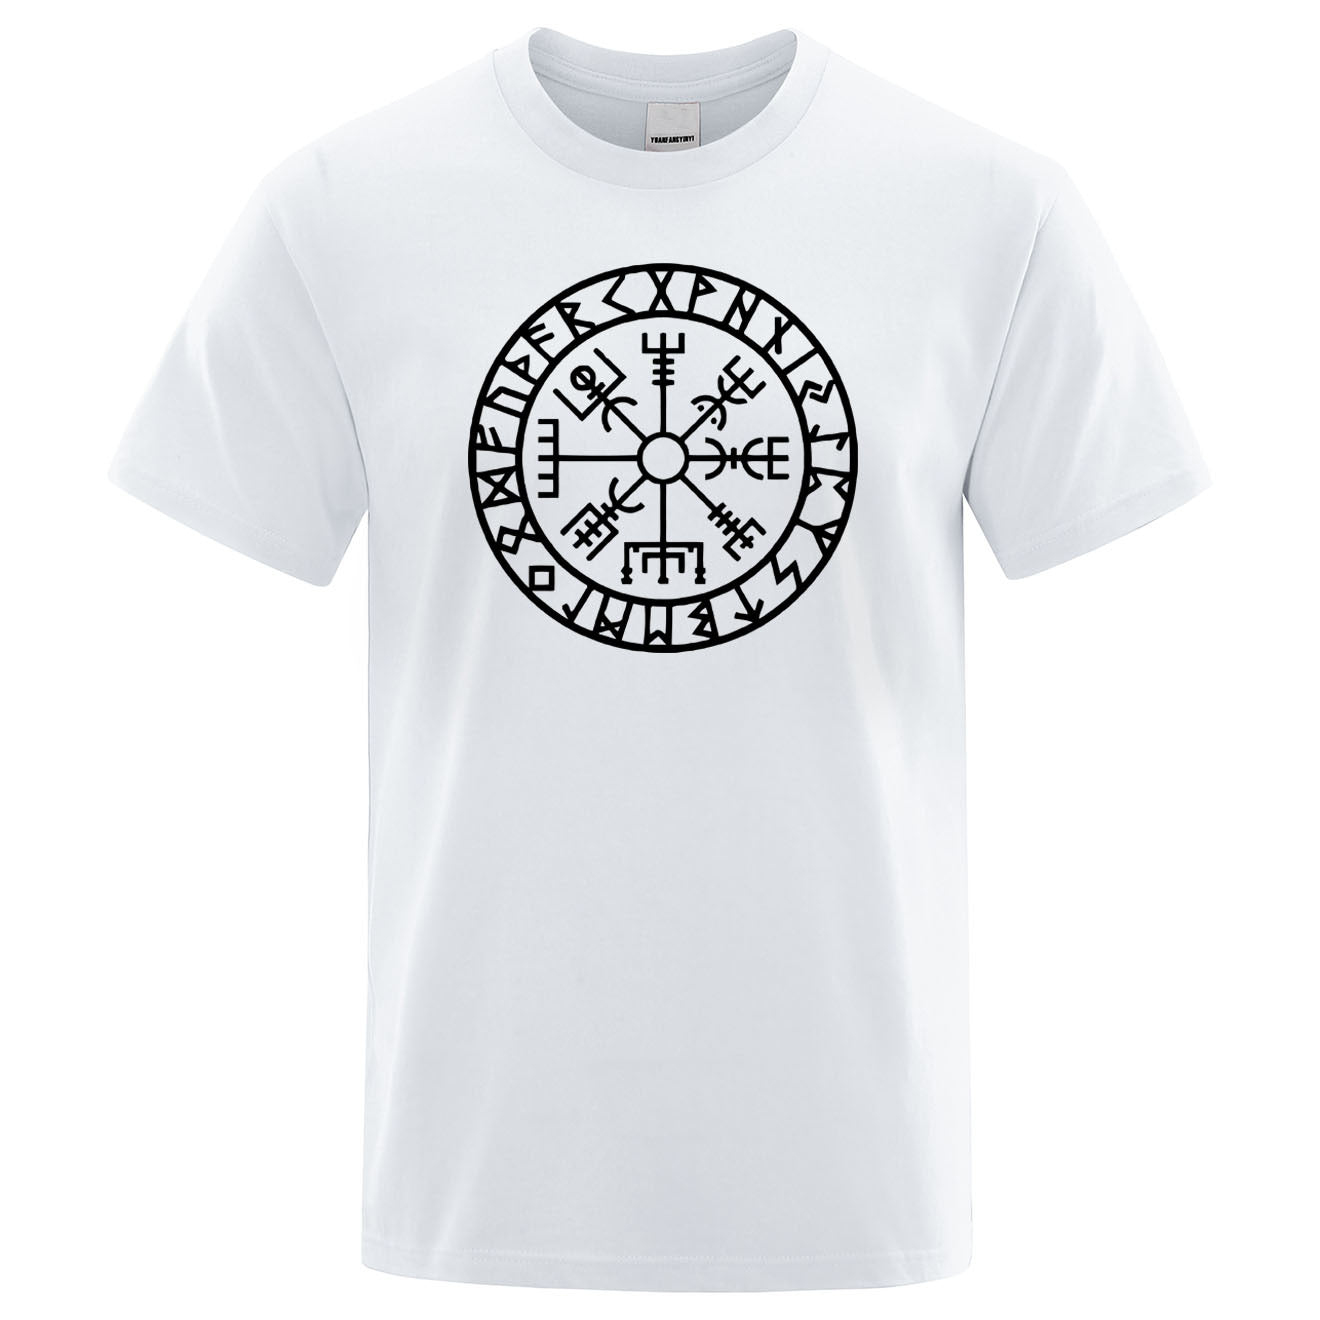 Vegvisir With Runes T-shirt